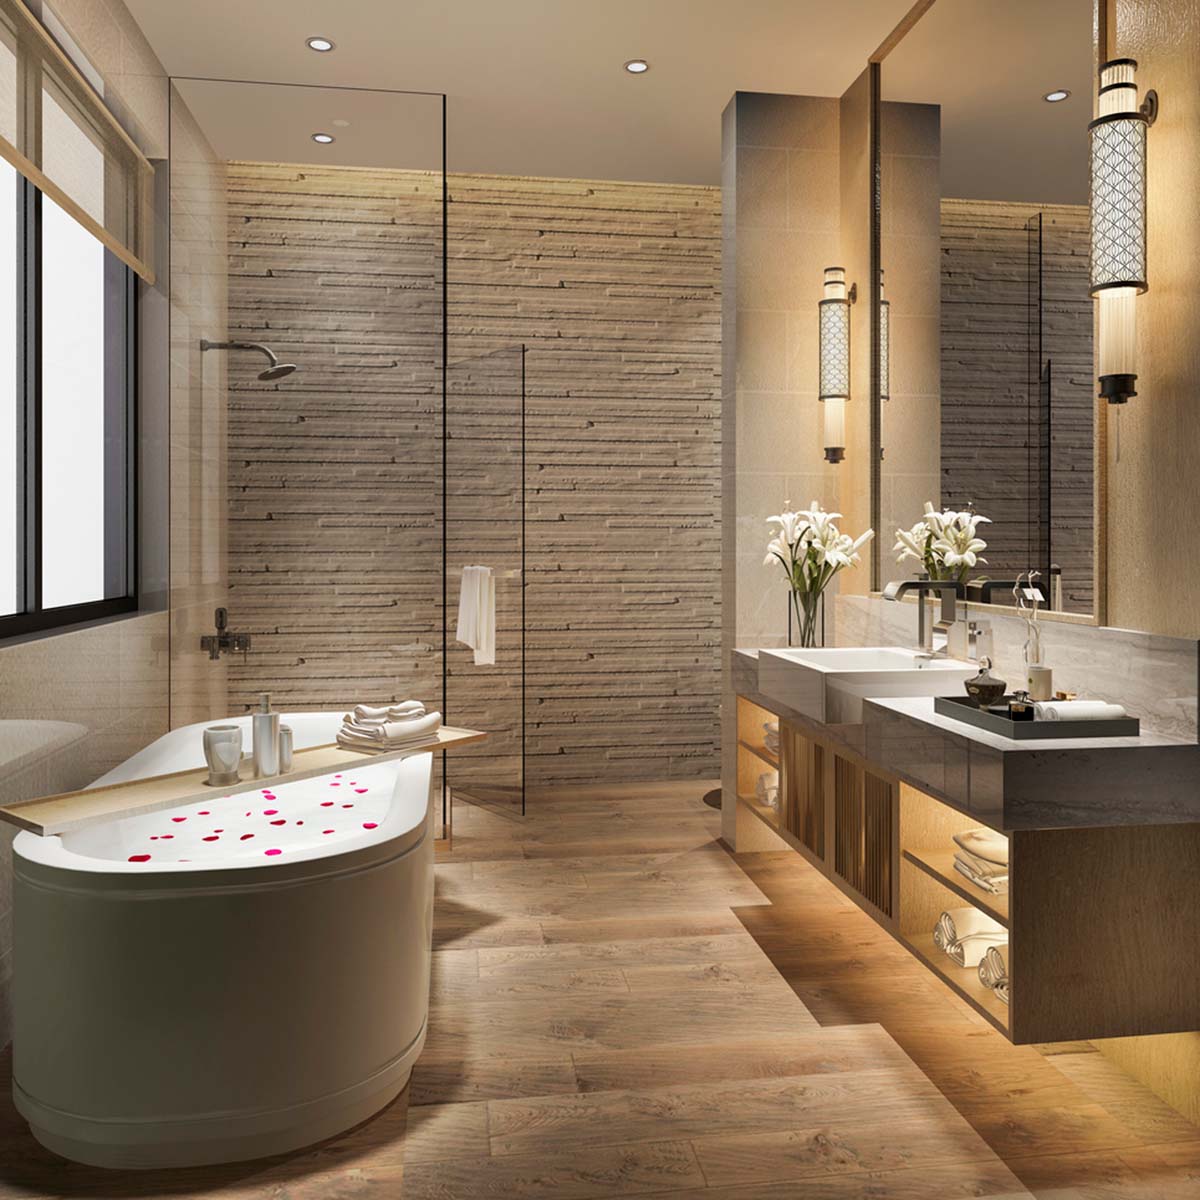 Thiết kế phòng tắm với sàn đá vân giả gỗ. Nguồn: Lisa Lewis